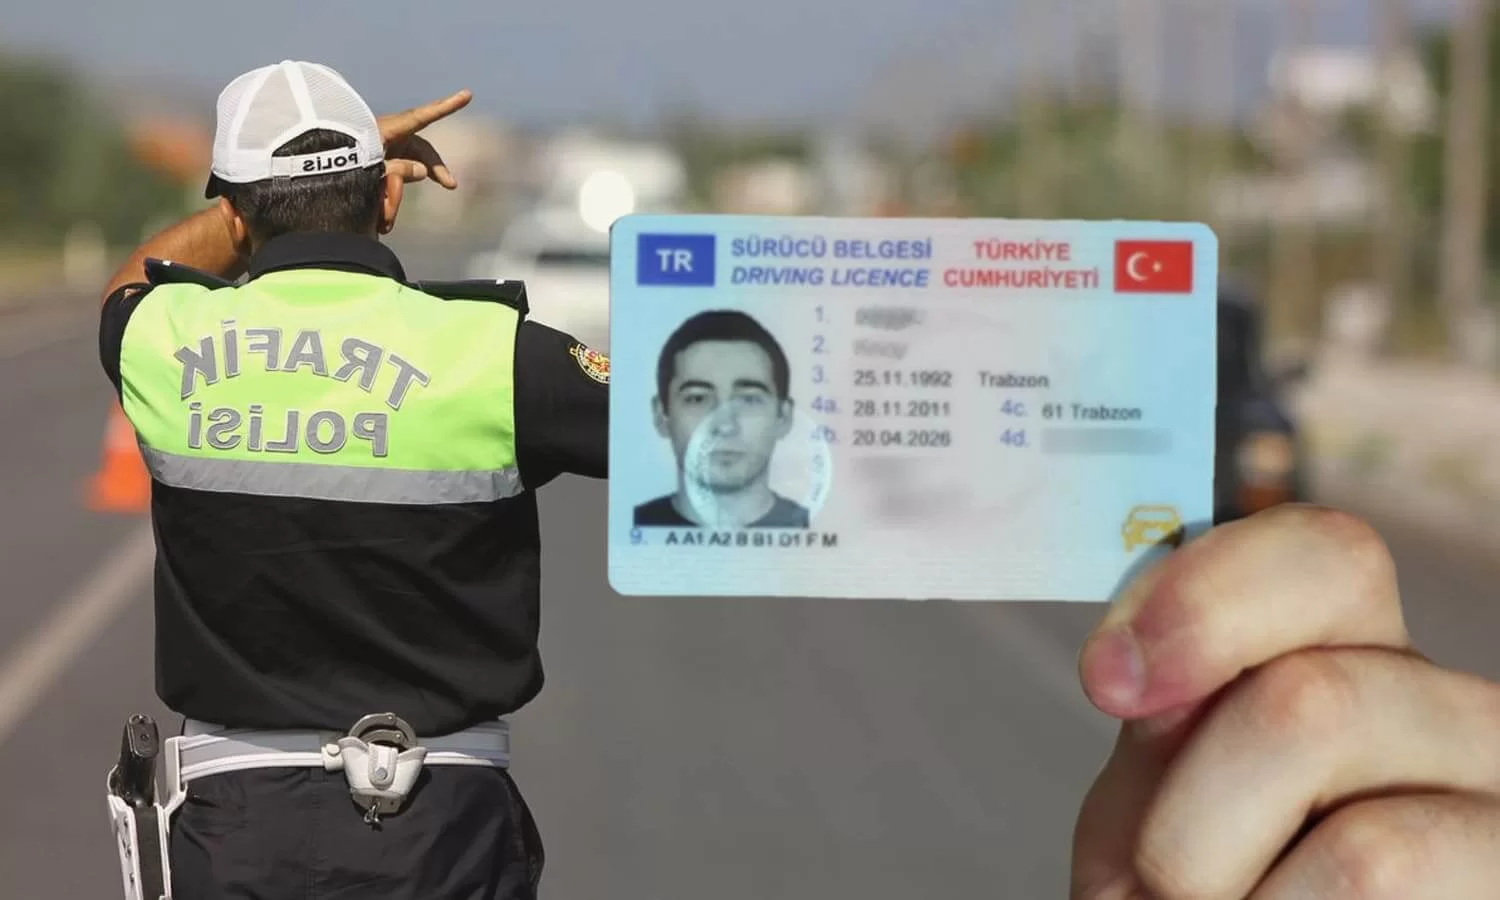 استخدام رخصة القيادة الأجنبية في تركيا